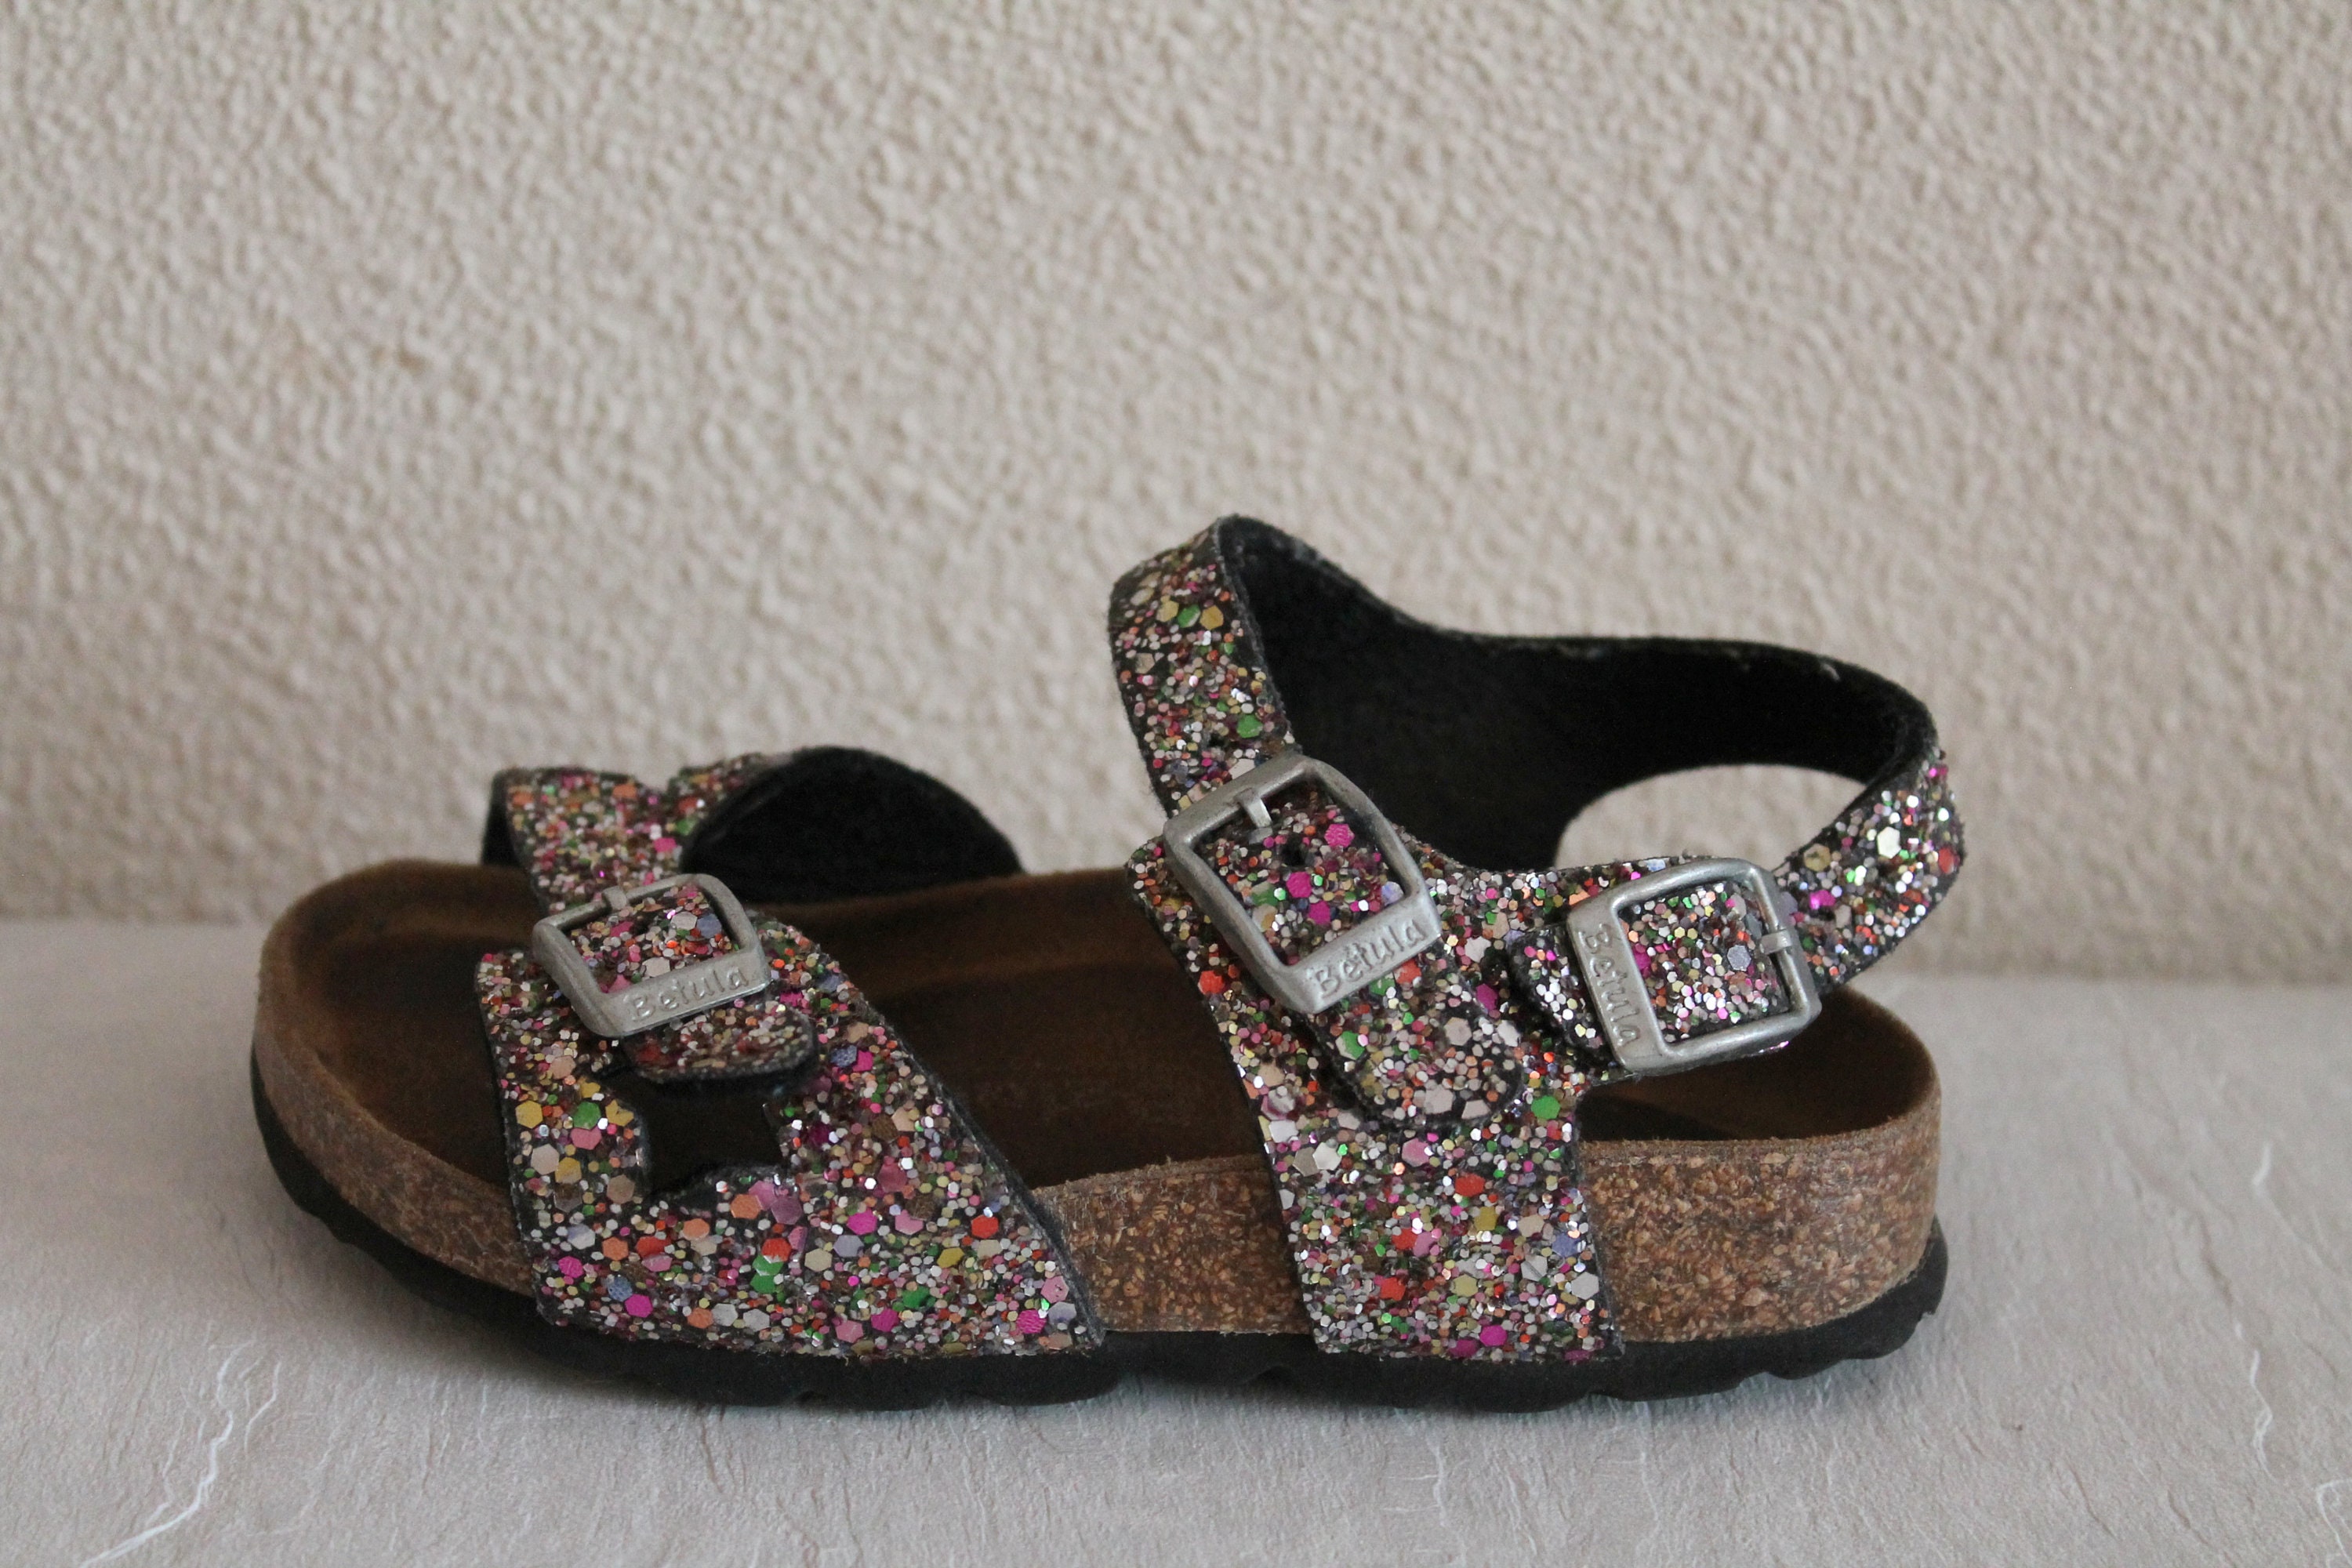 Birkenstock Sandals Kids Birkenstock Shoes Betula Sparkle - Etsy